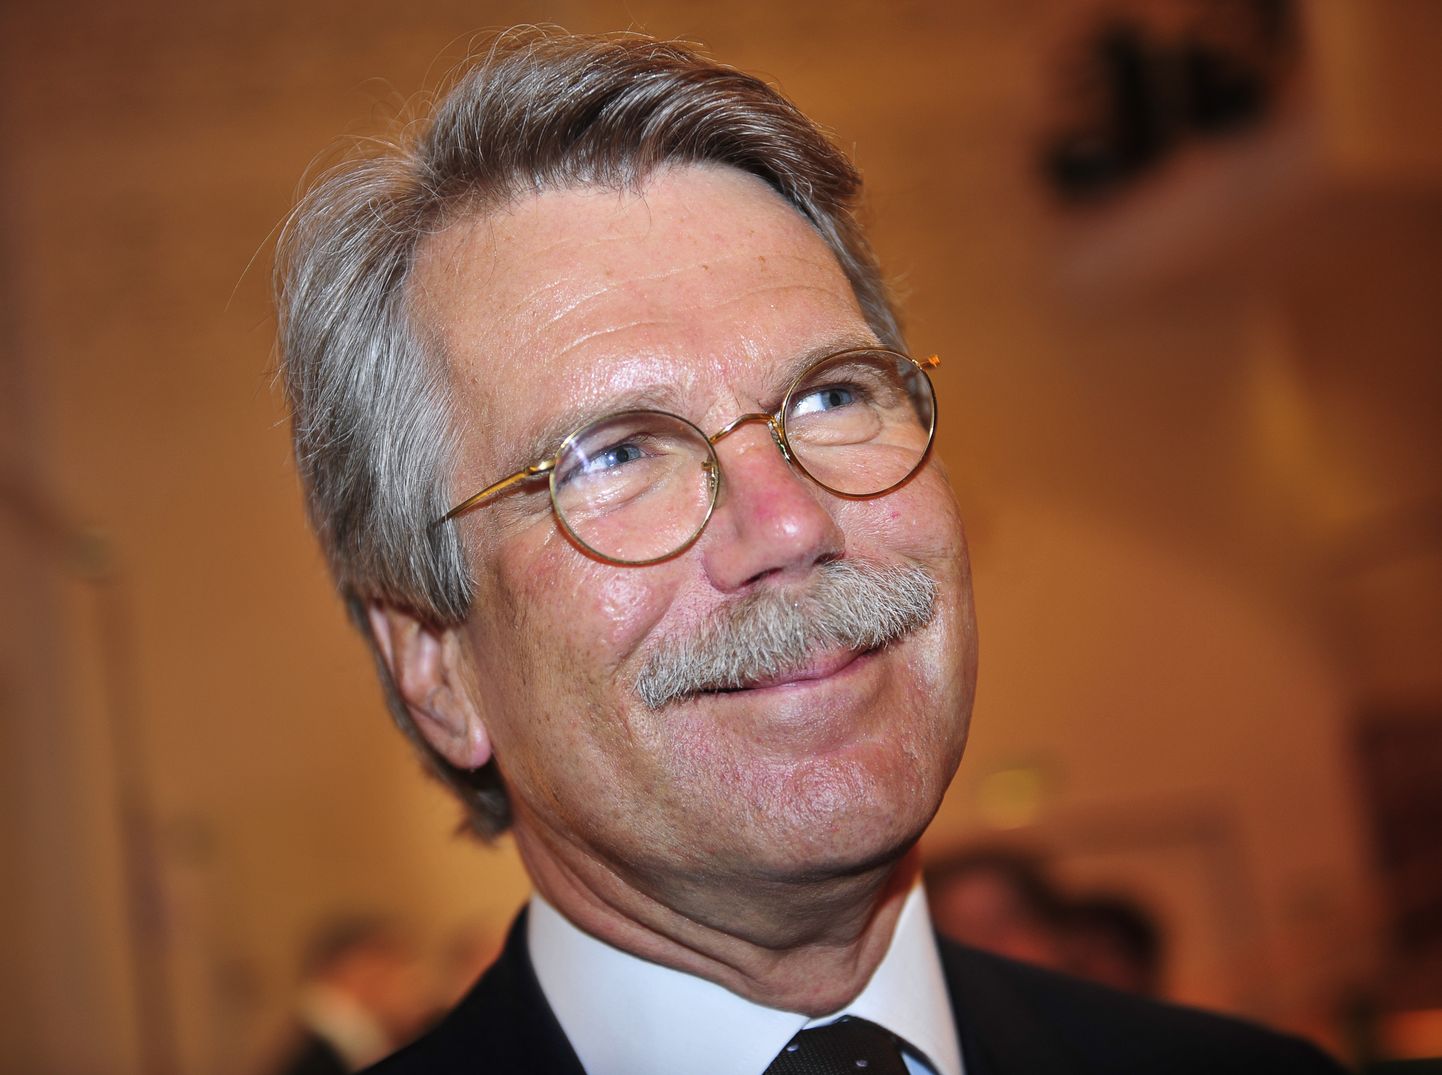 Soome üks rikkaimaid inimesi on Nordea nõukogu esimees Björn Wahlroos